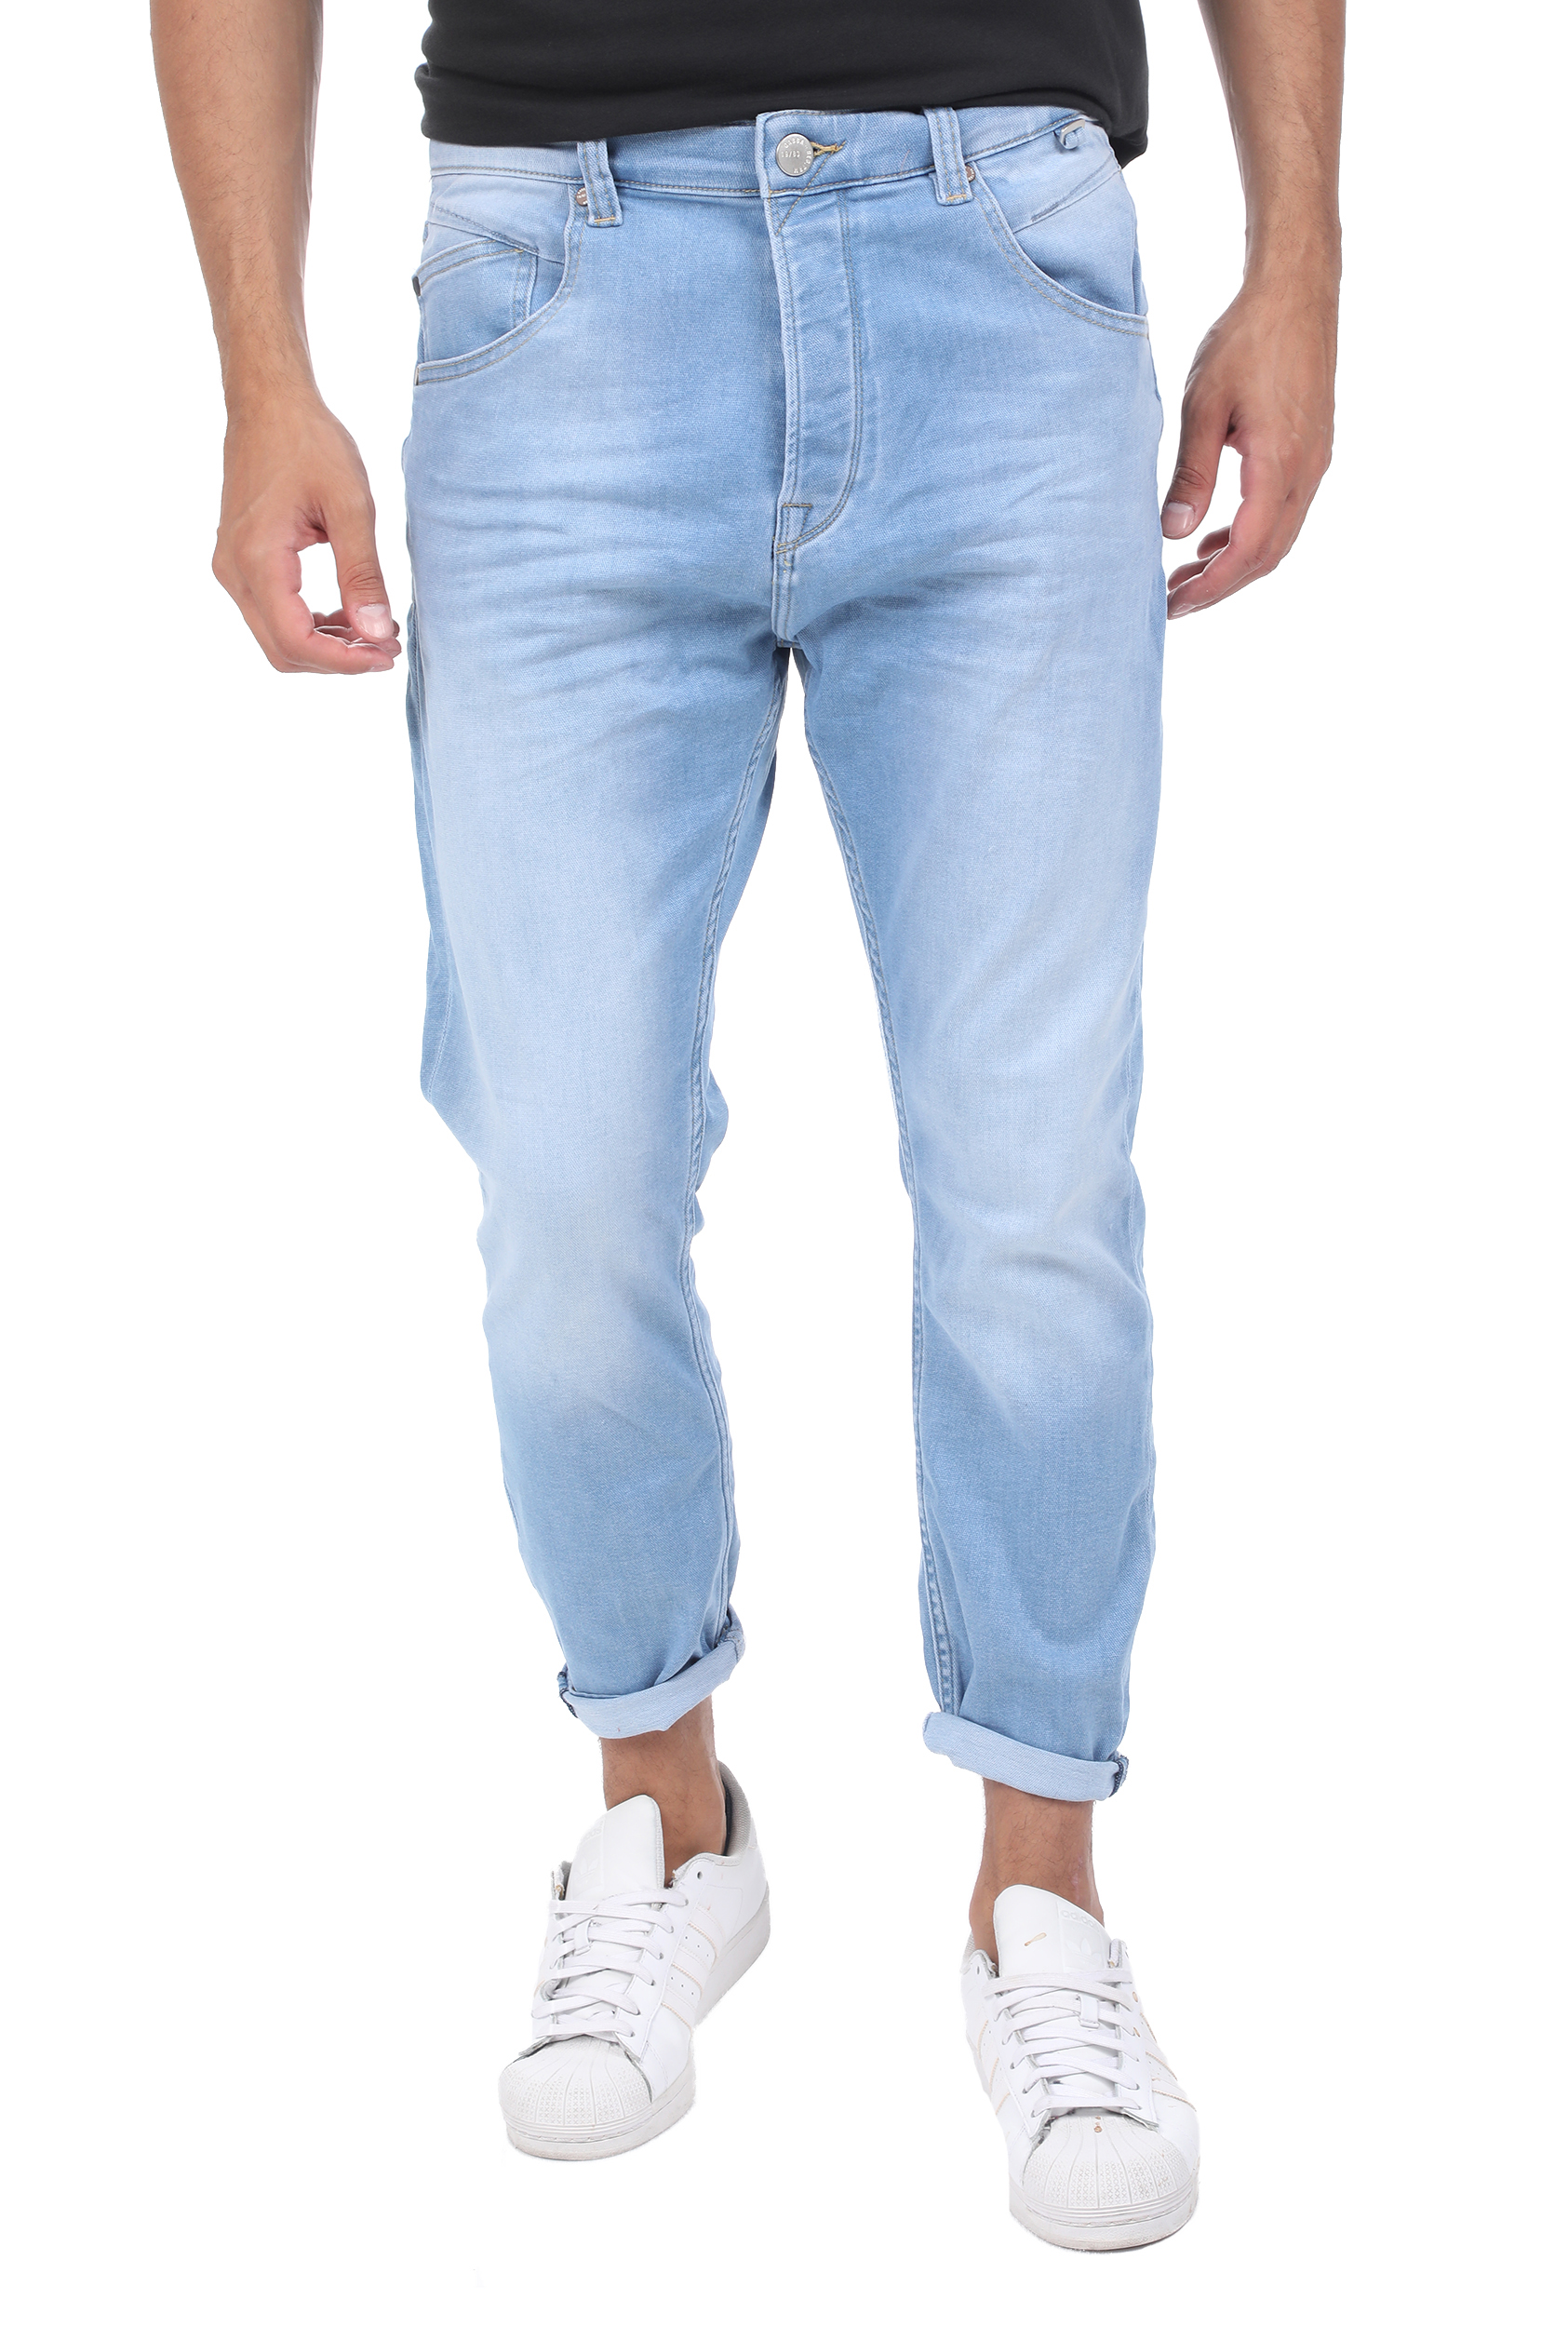 Ανδρικά/Ρούχα/Τζίν/Straight GABBA - Ανδρικό jean παντελόνι GABBA Alex μπλε